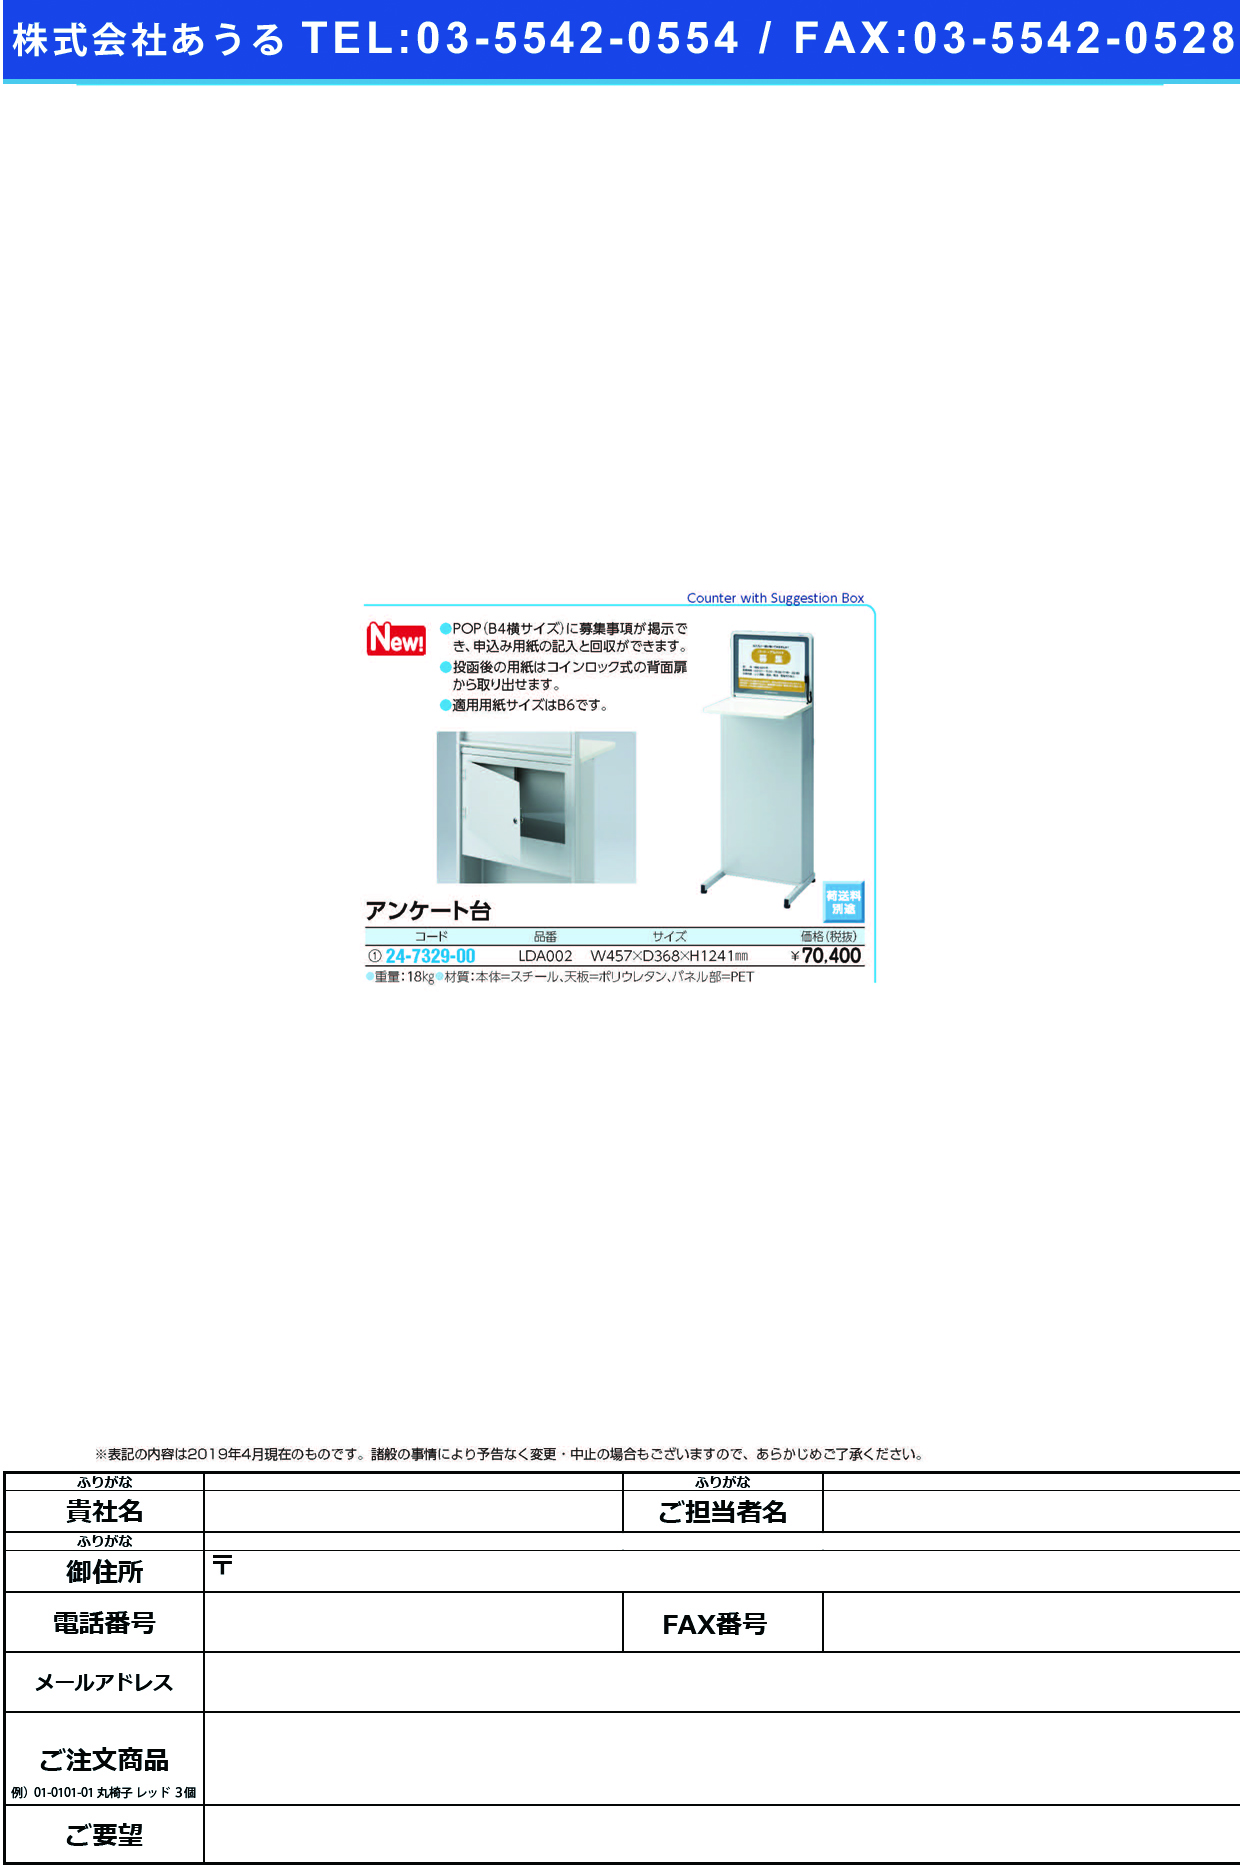 (24-7329-00)アンケート台LDA002 ｱﾝｹｰﾄﾀﾞｲ(河淳)【1台単位】【2019年カタログ商品】